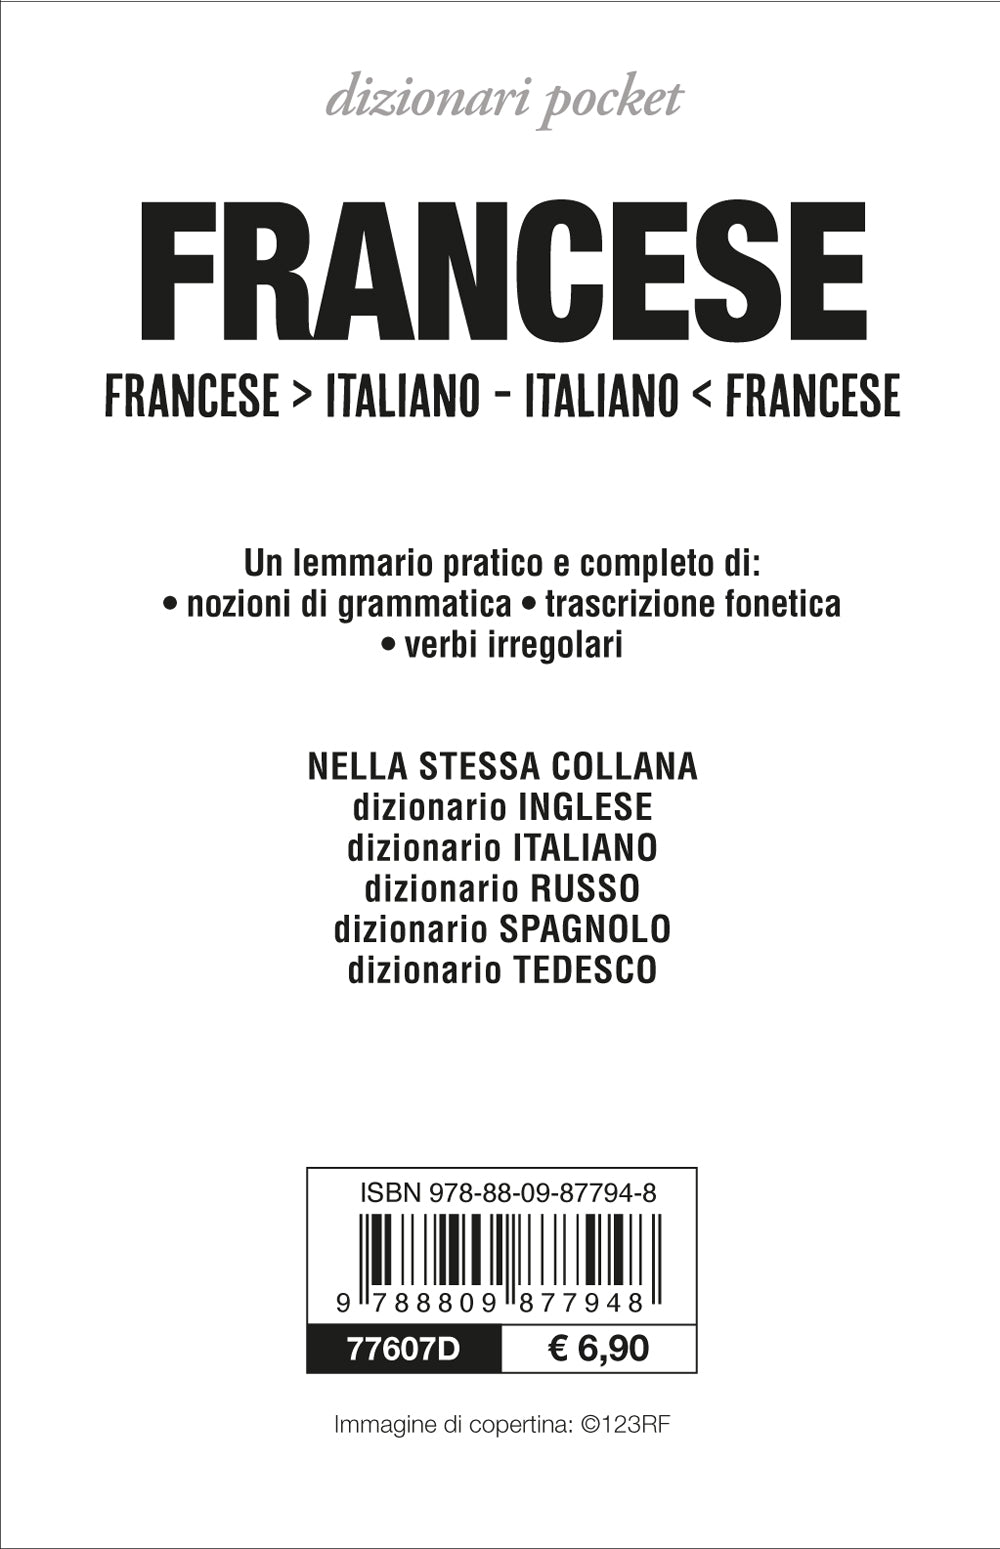 Gran dizionario italiano-francese/